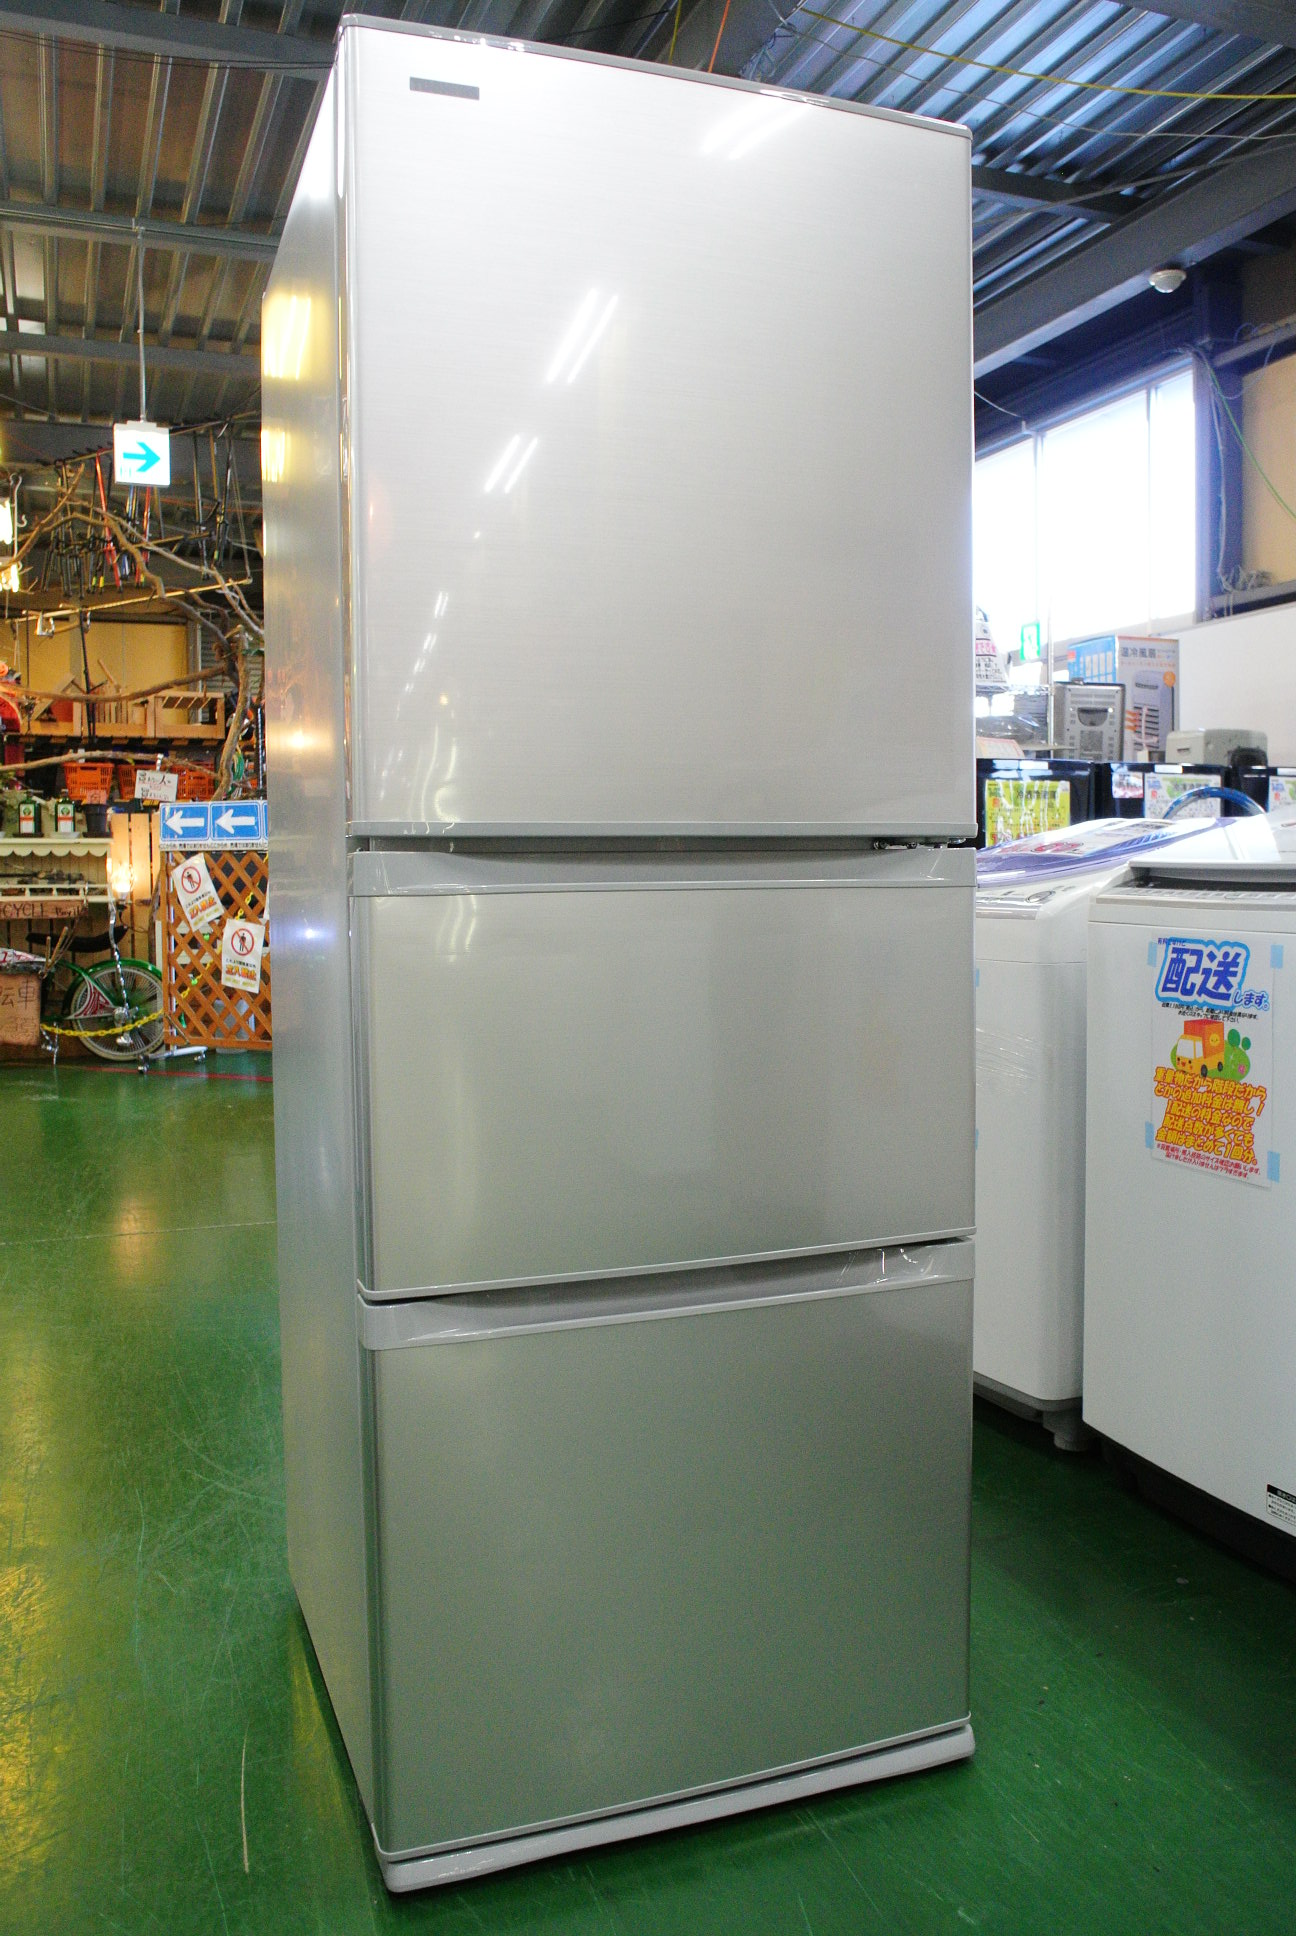 東芝 330L 3ドア冷蔵庫 GR-H34SY 2017年製が入荷。高年式の冷蔵庫も